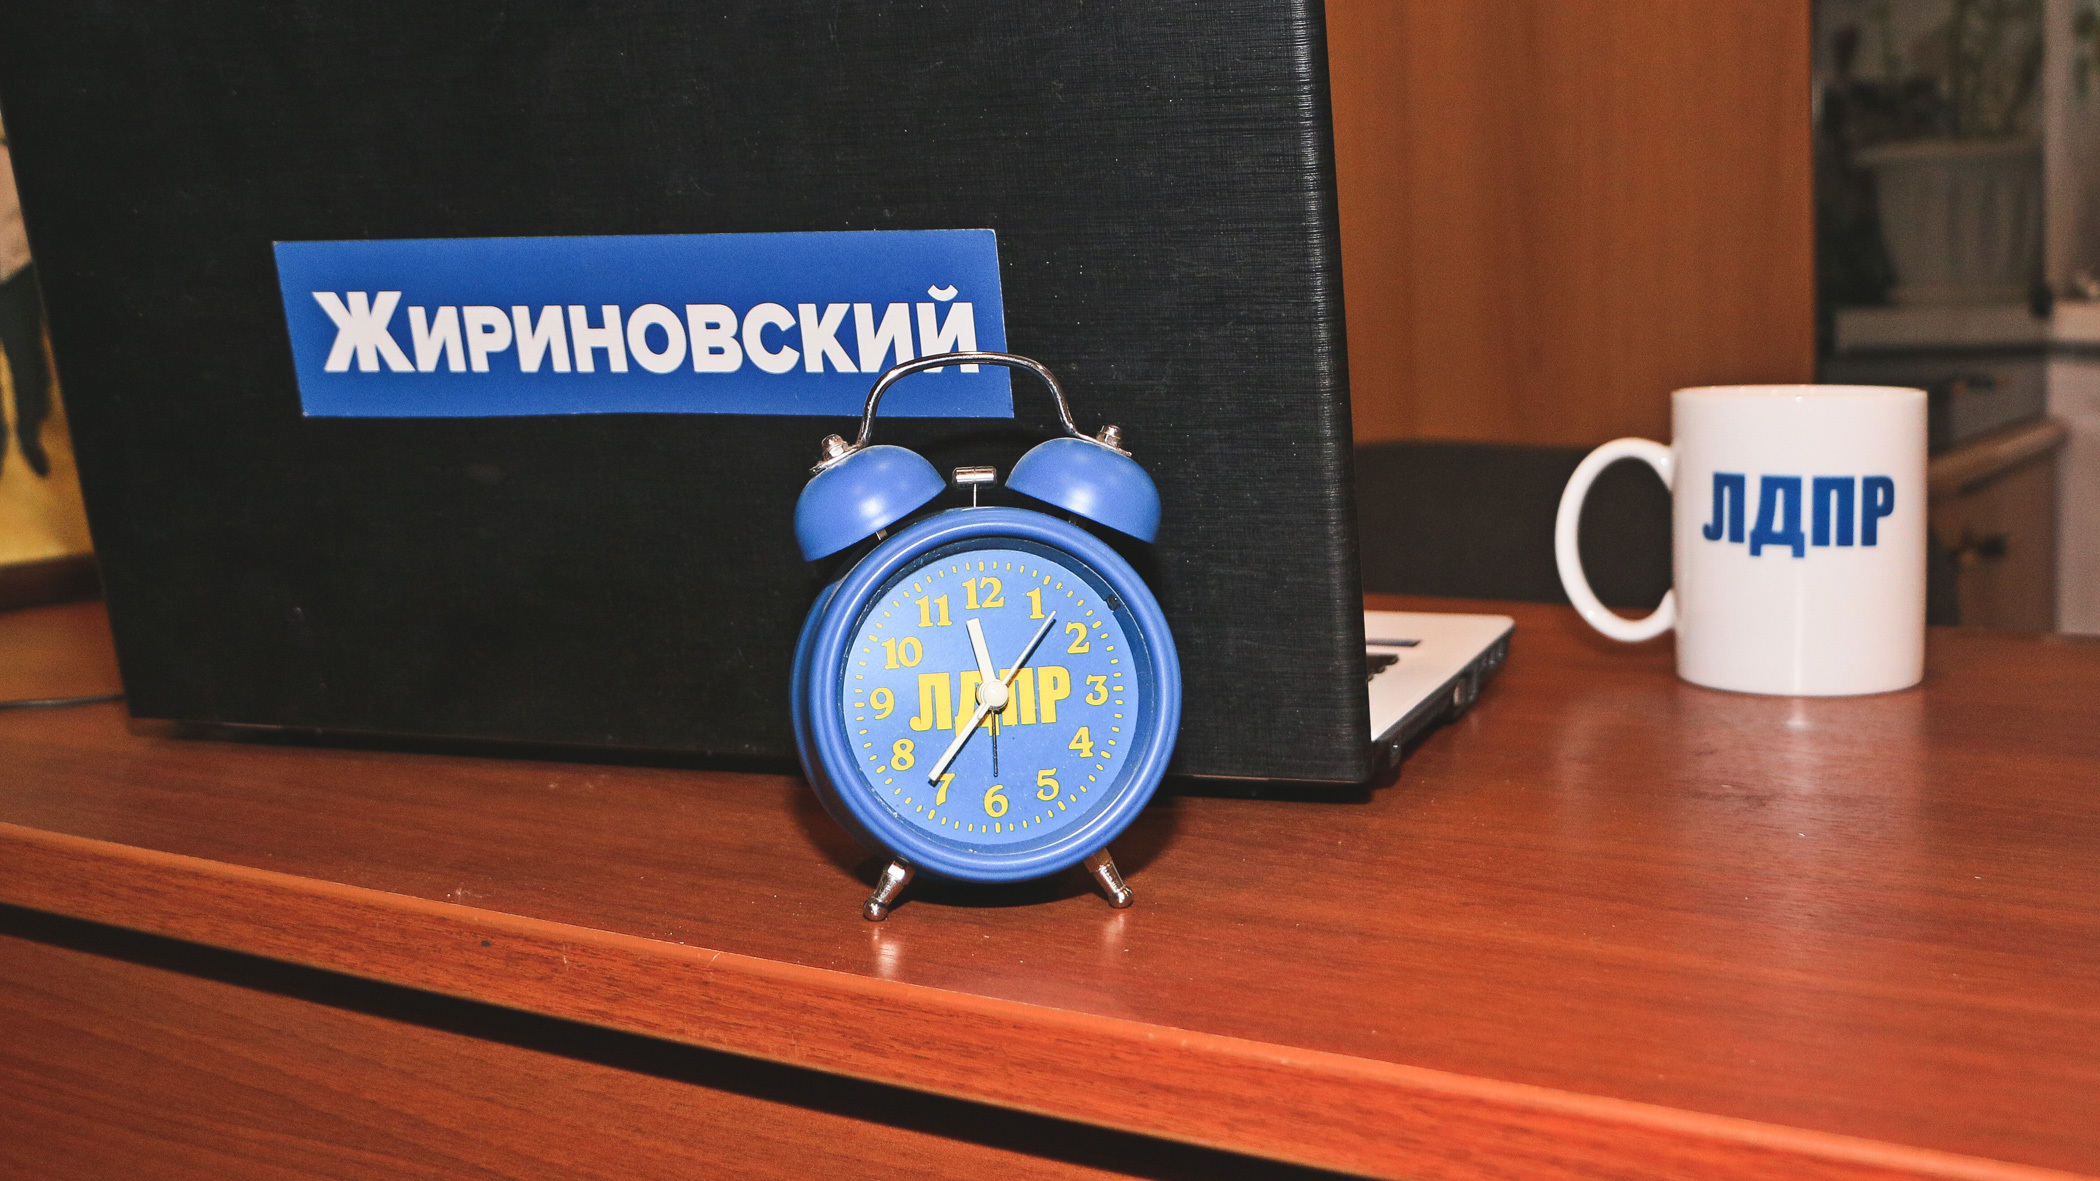 Мат-перемат: Жириновский вышел из комы и уже изучает последние новости